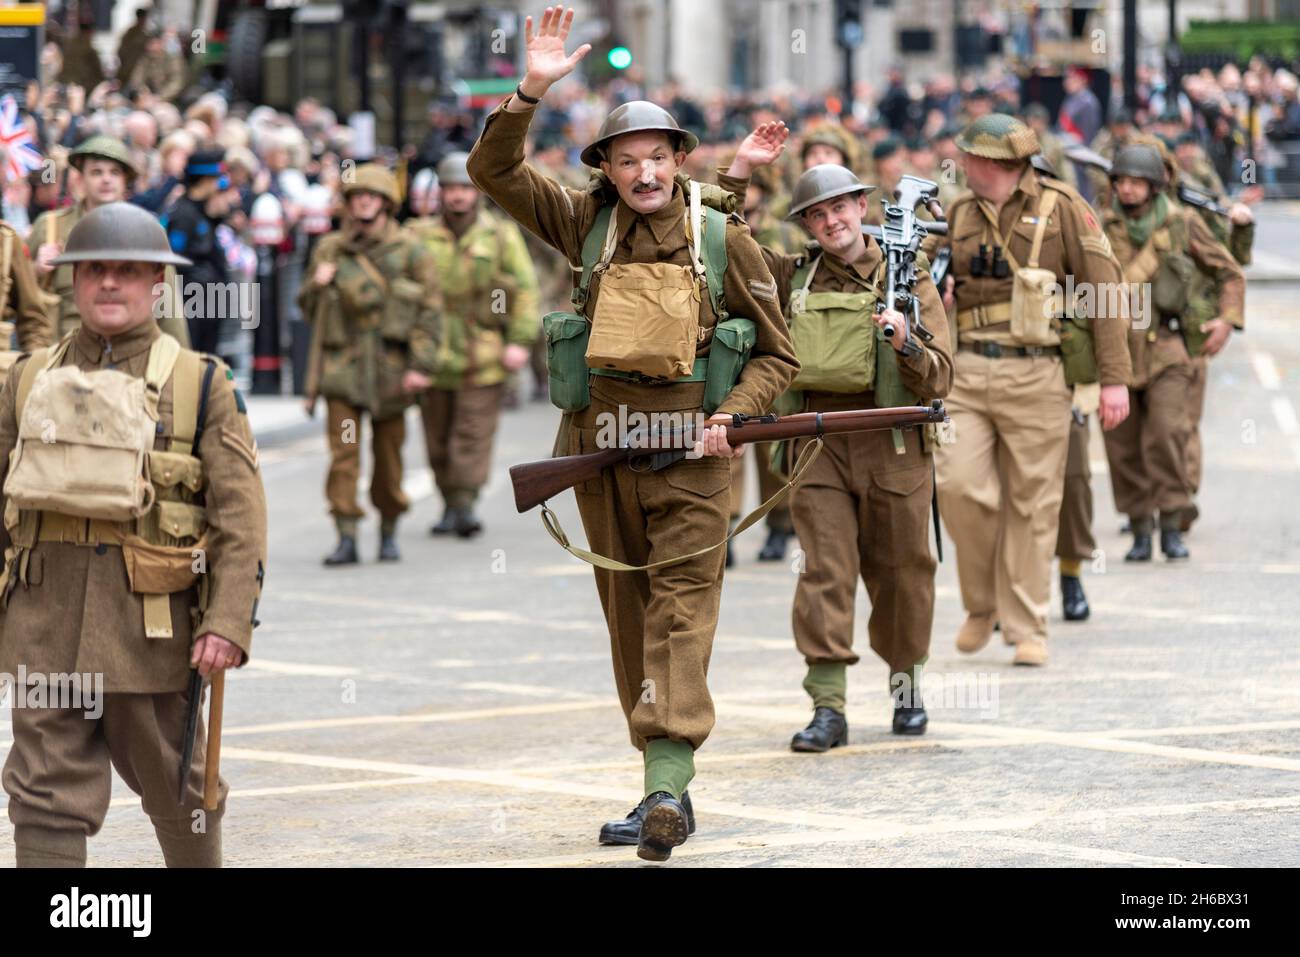 The London Regiment en uniformes d'époque au Lord Mayor's Show, Parade, procession passant le long de Poultry, près de Mansion House, Londres, Royaume-Uni. Banque D'Images